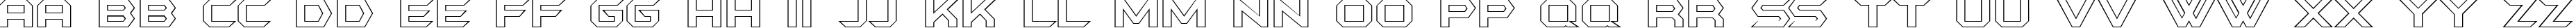 Пример написания английского алфавита шрифтом BatmanForeverOutline